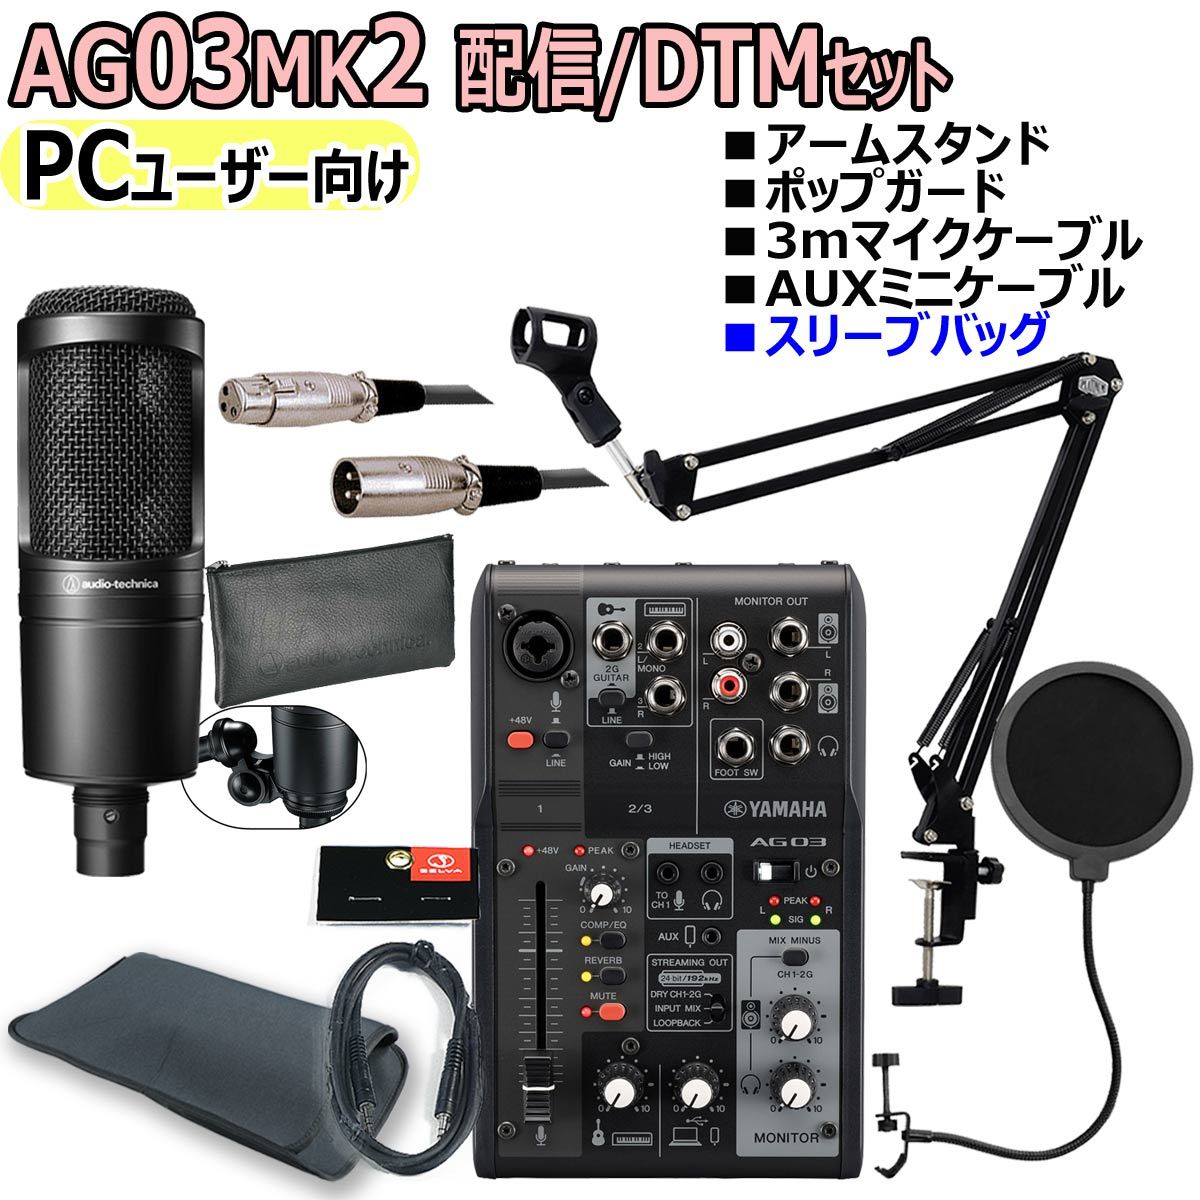 YAMAHA AG03MK2 BLACK AT2020 PCユーザー向け 配信/DTMセット【WEBSHOP